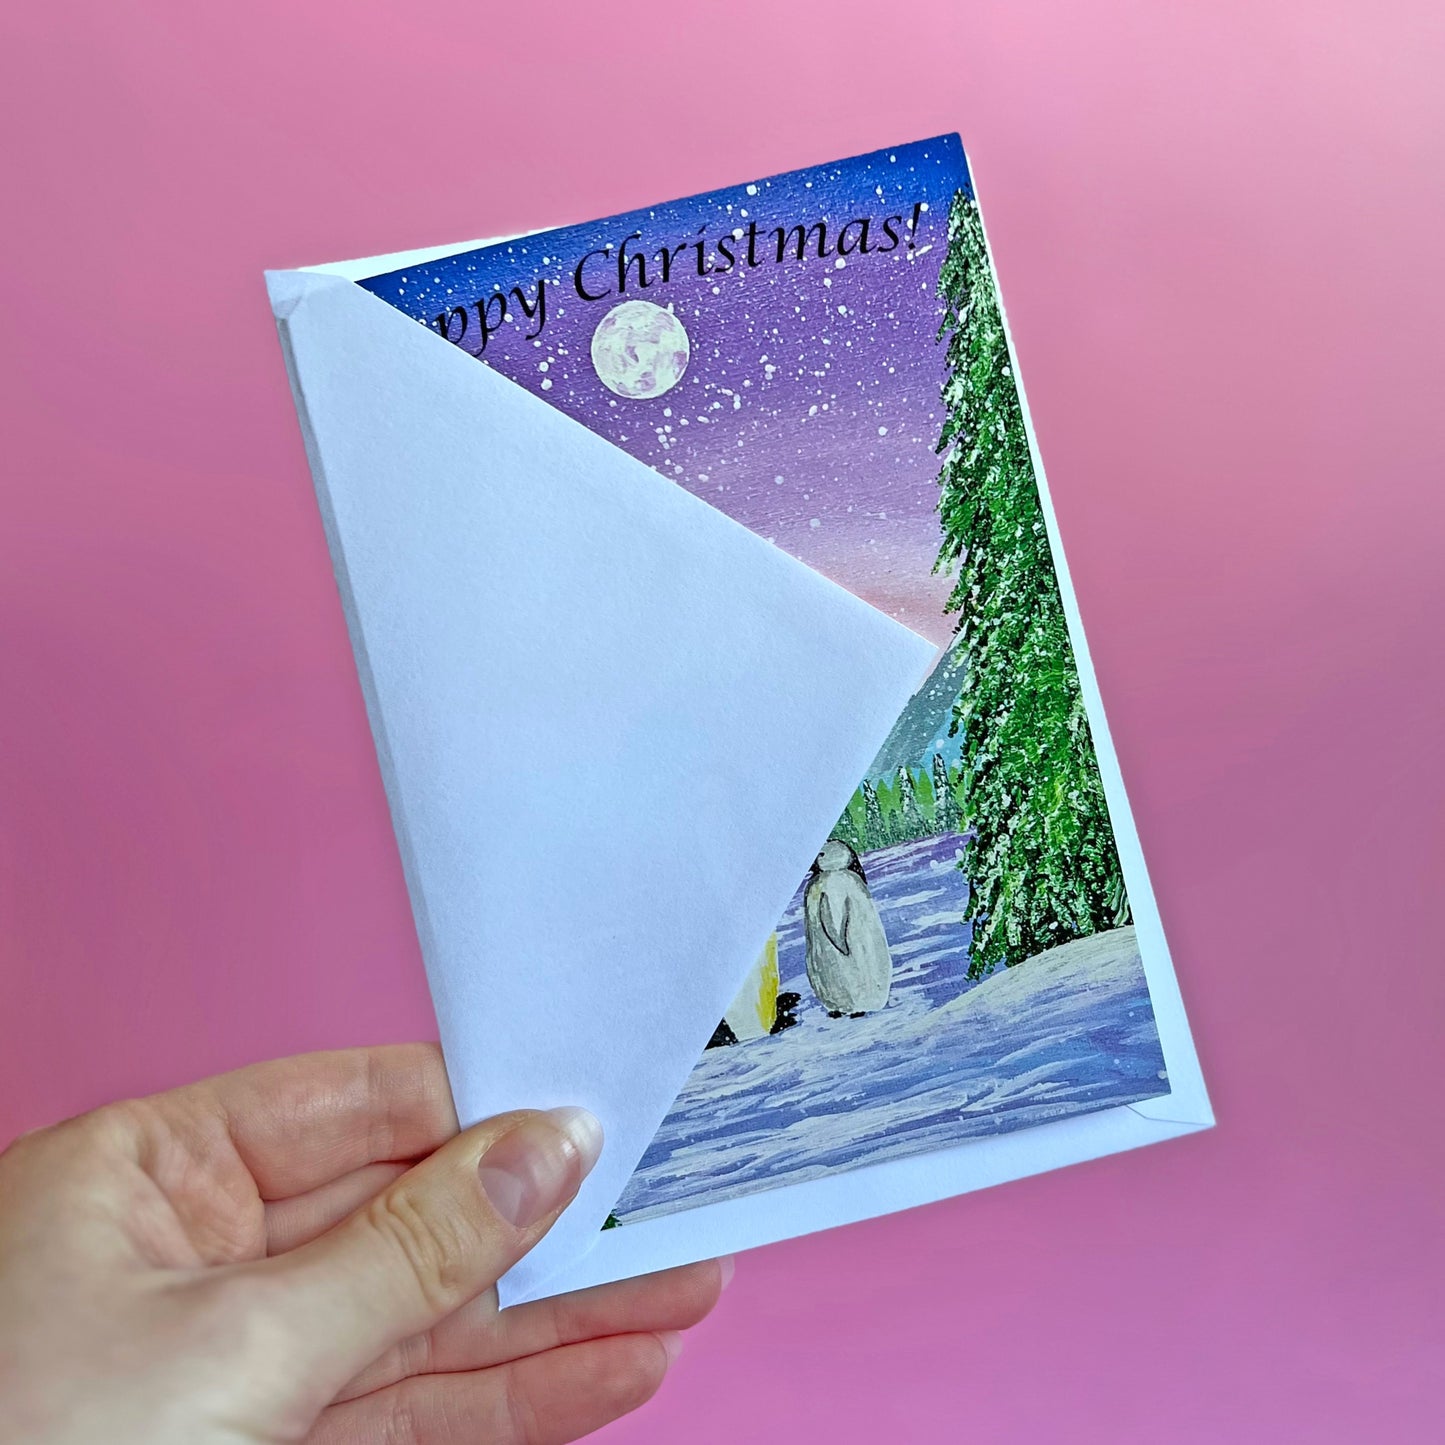 Penguin Christmas Card, Acrylic Painting Christmas Card